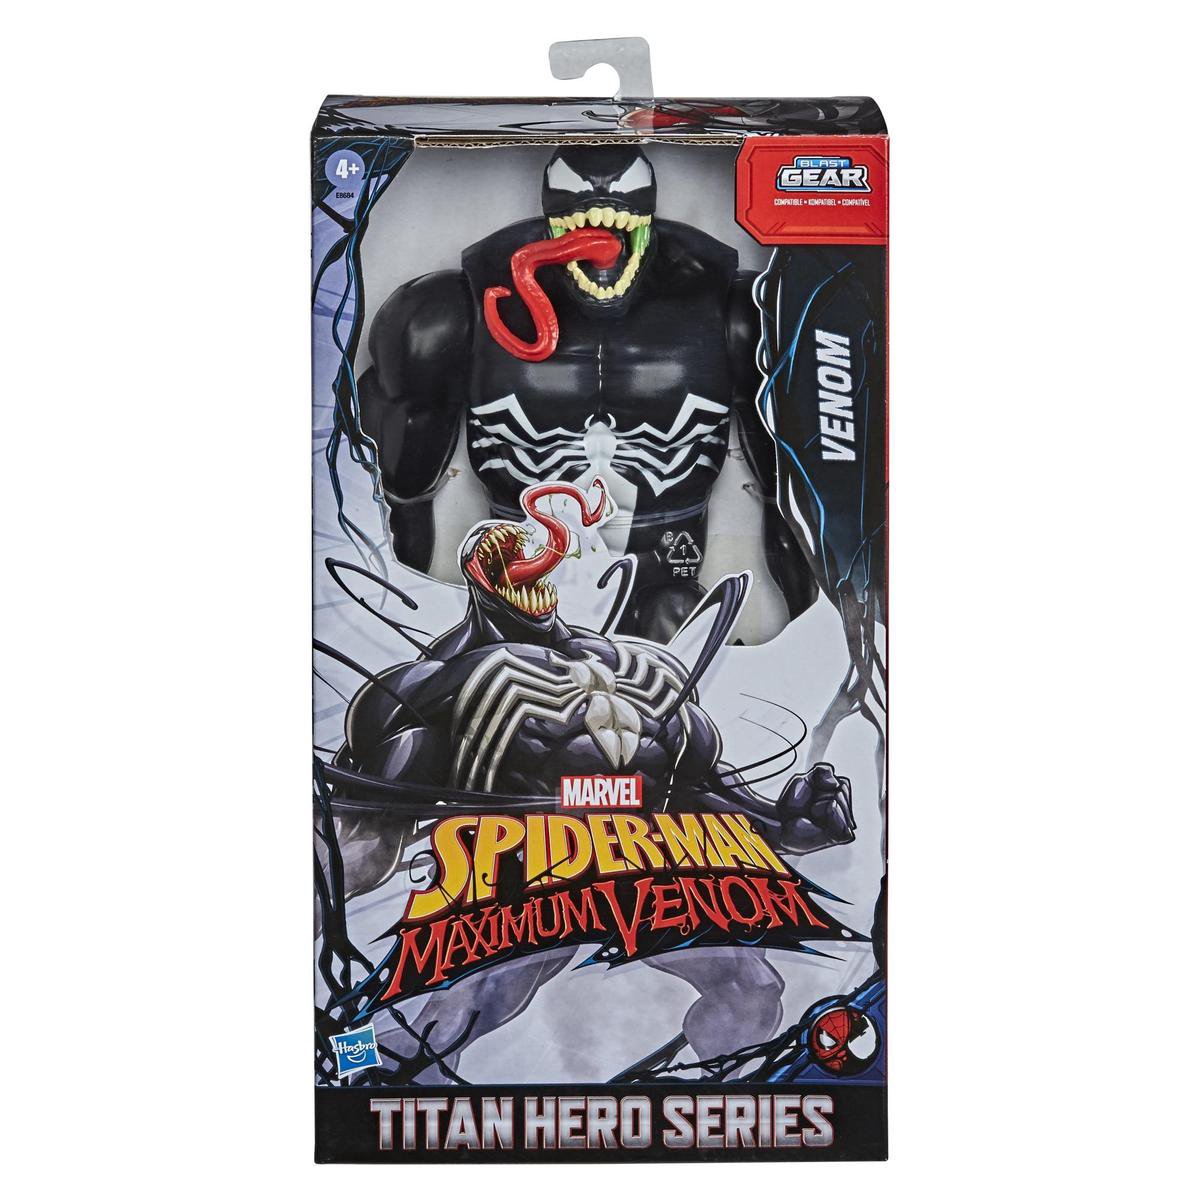 Spider-Man Titan Hero 35Cm Maximum Venom - Marvel